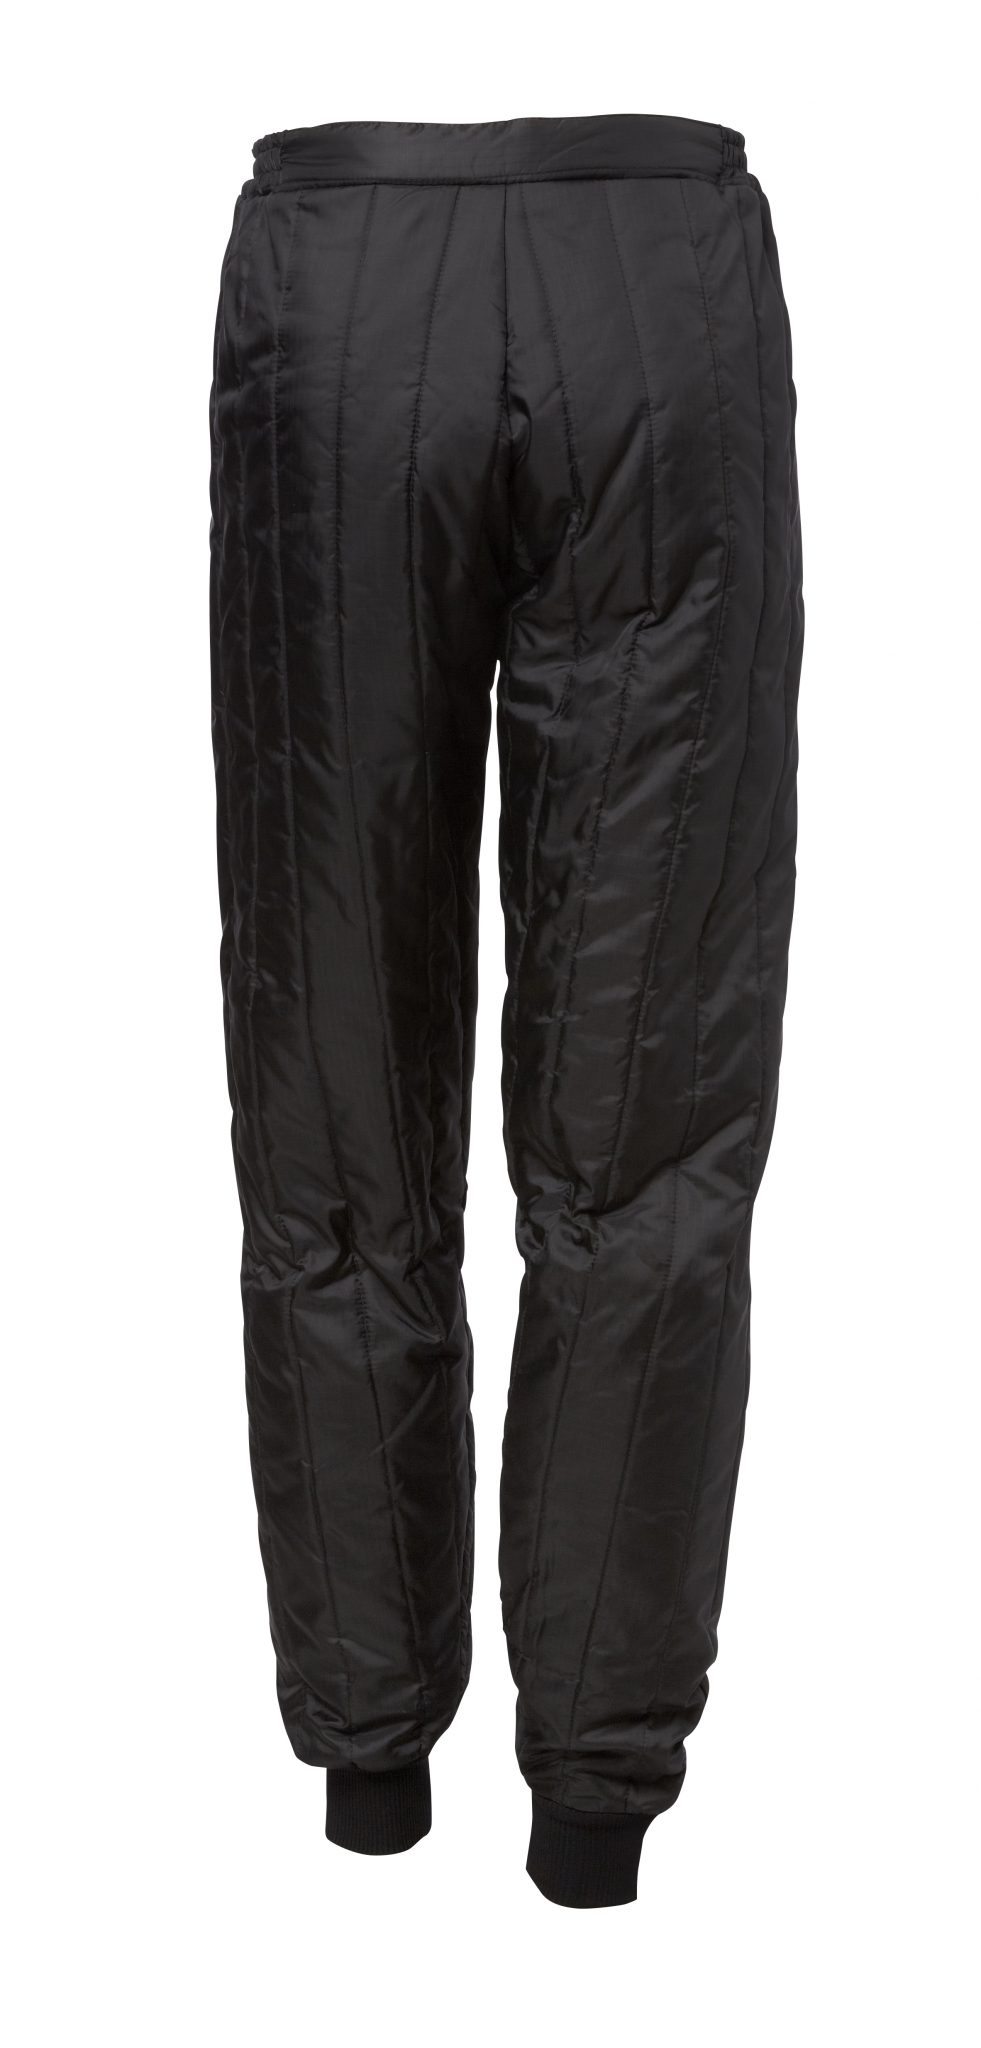 Thermal Trousers af høj kvalitet, holder dig varm - Viking Rubber Co.